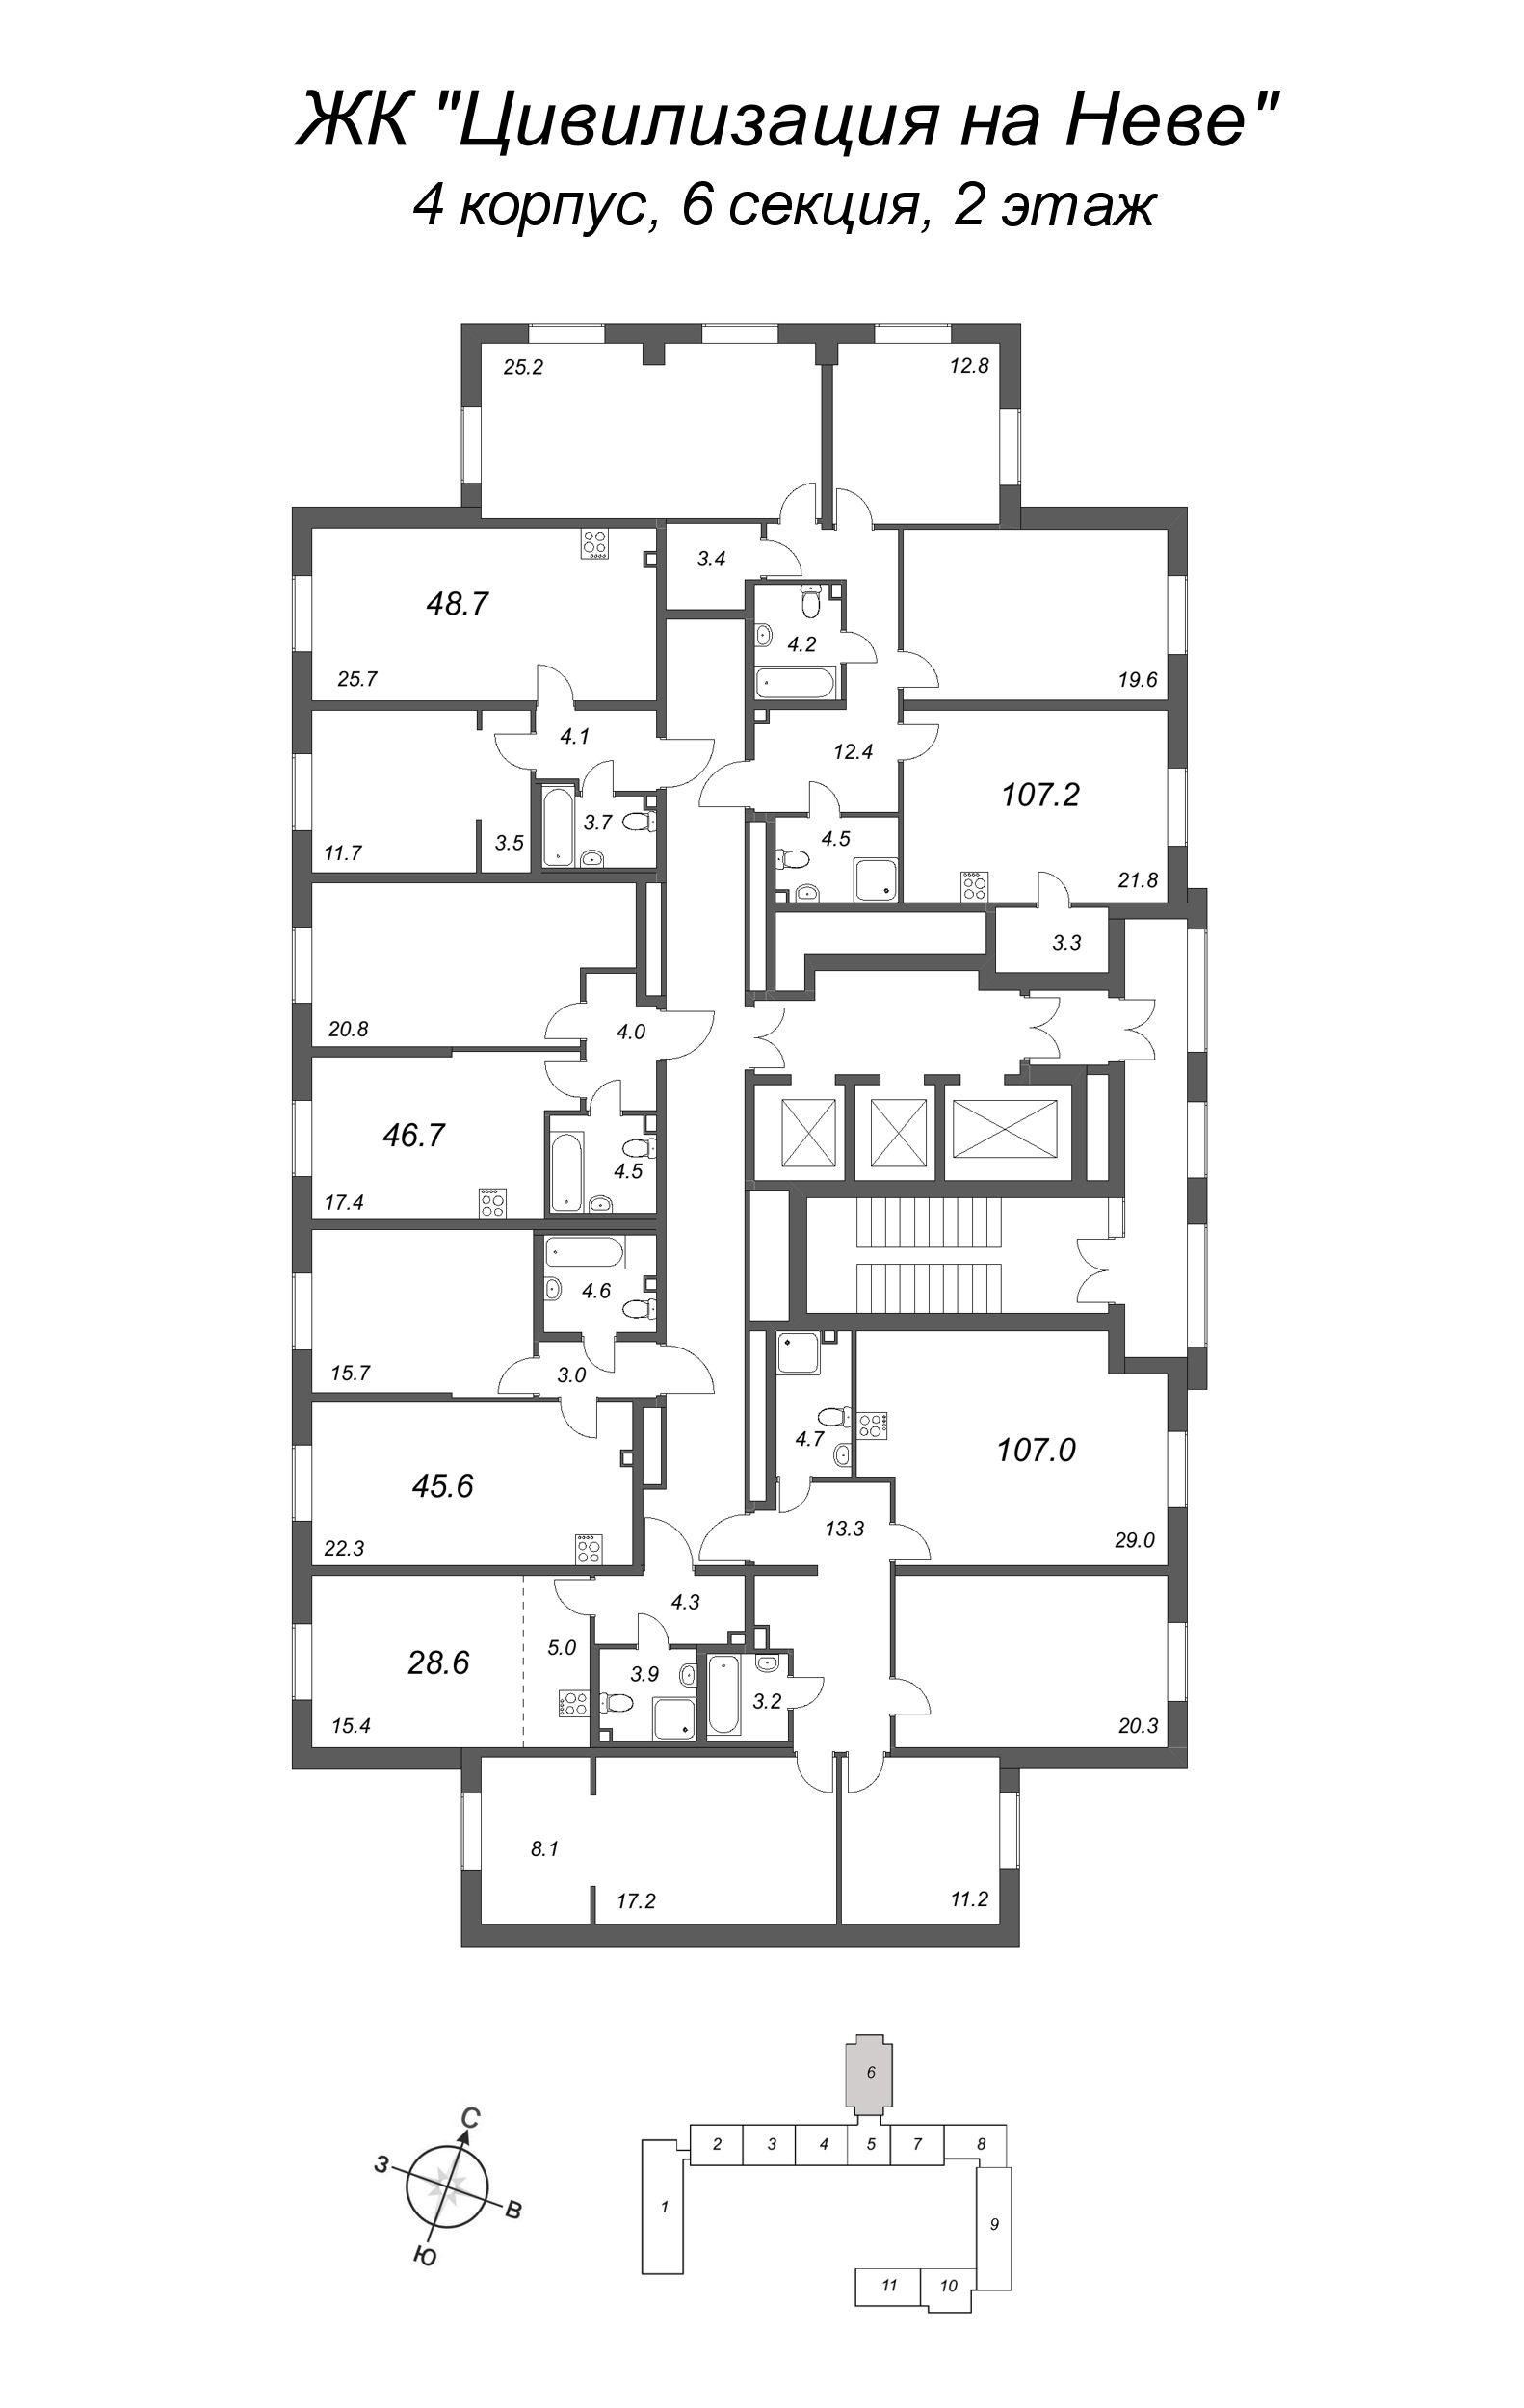 2-комнатная (Евро) квартира, 45.6 м² в ЖК "Цивилизация на Неве" - планировка этажа